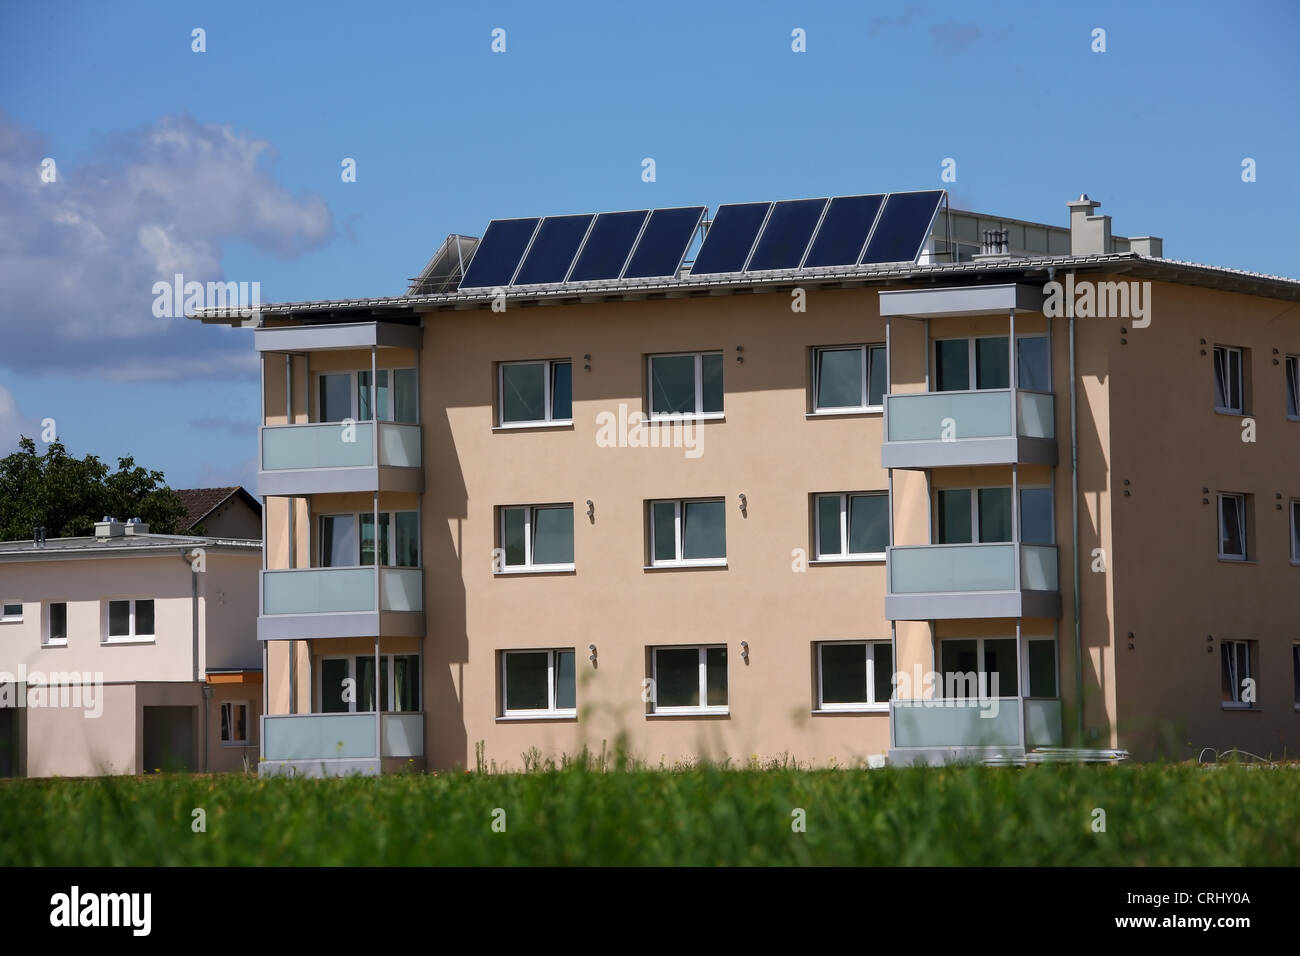 Mehrparteien Haus mit Solarkollektoren Stockfoto